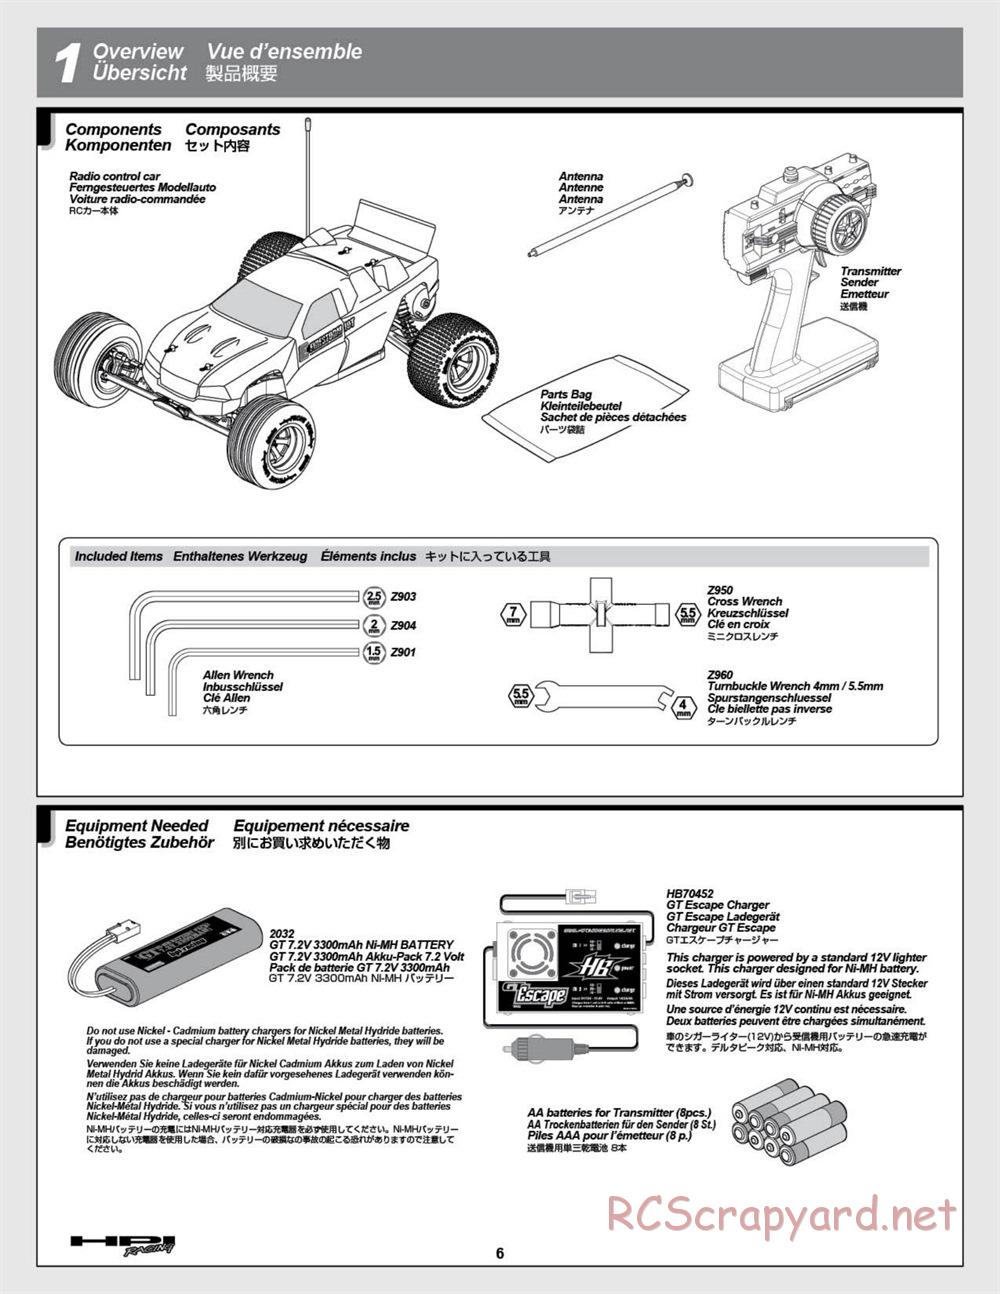 HPI - E-Firestorm 10T - Manual - Page 6